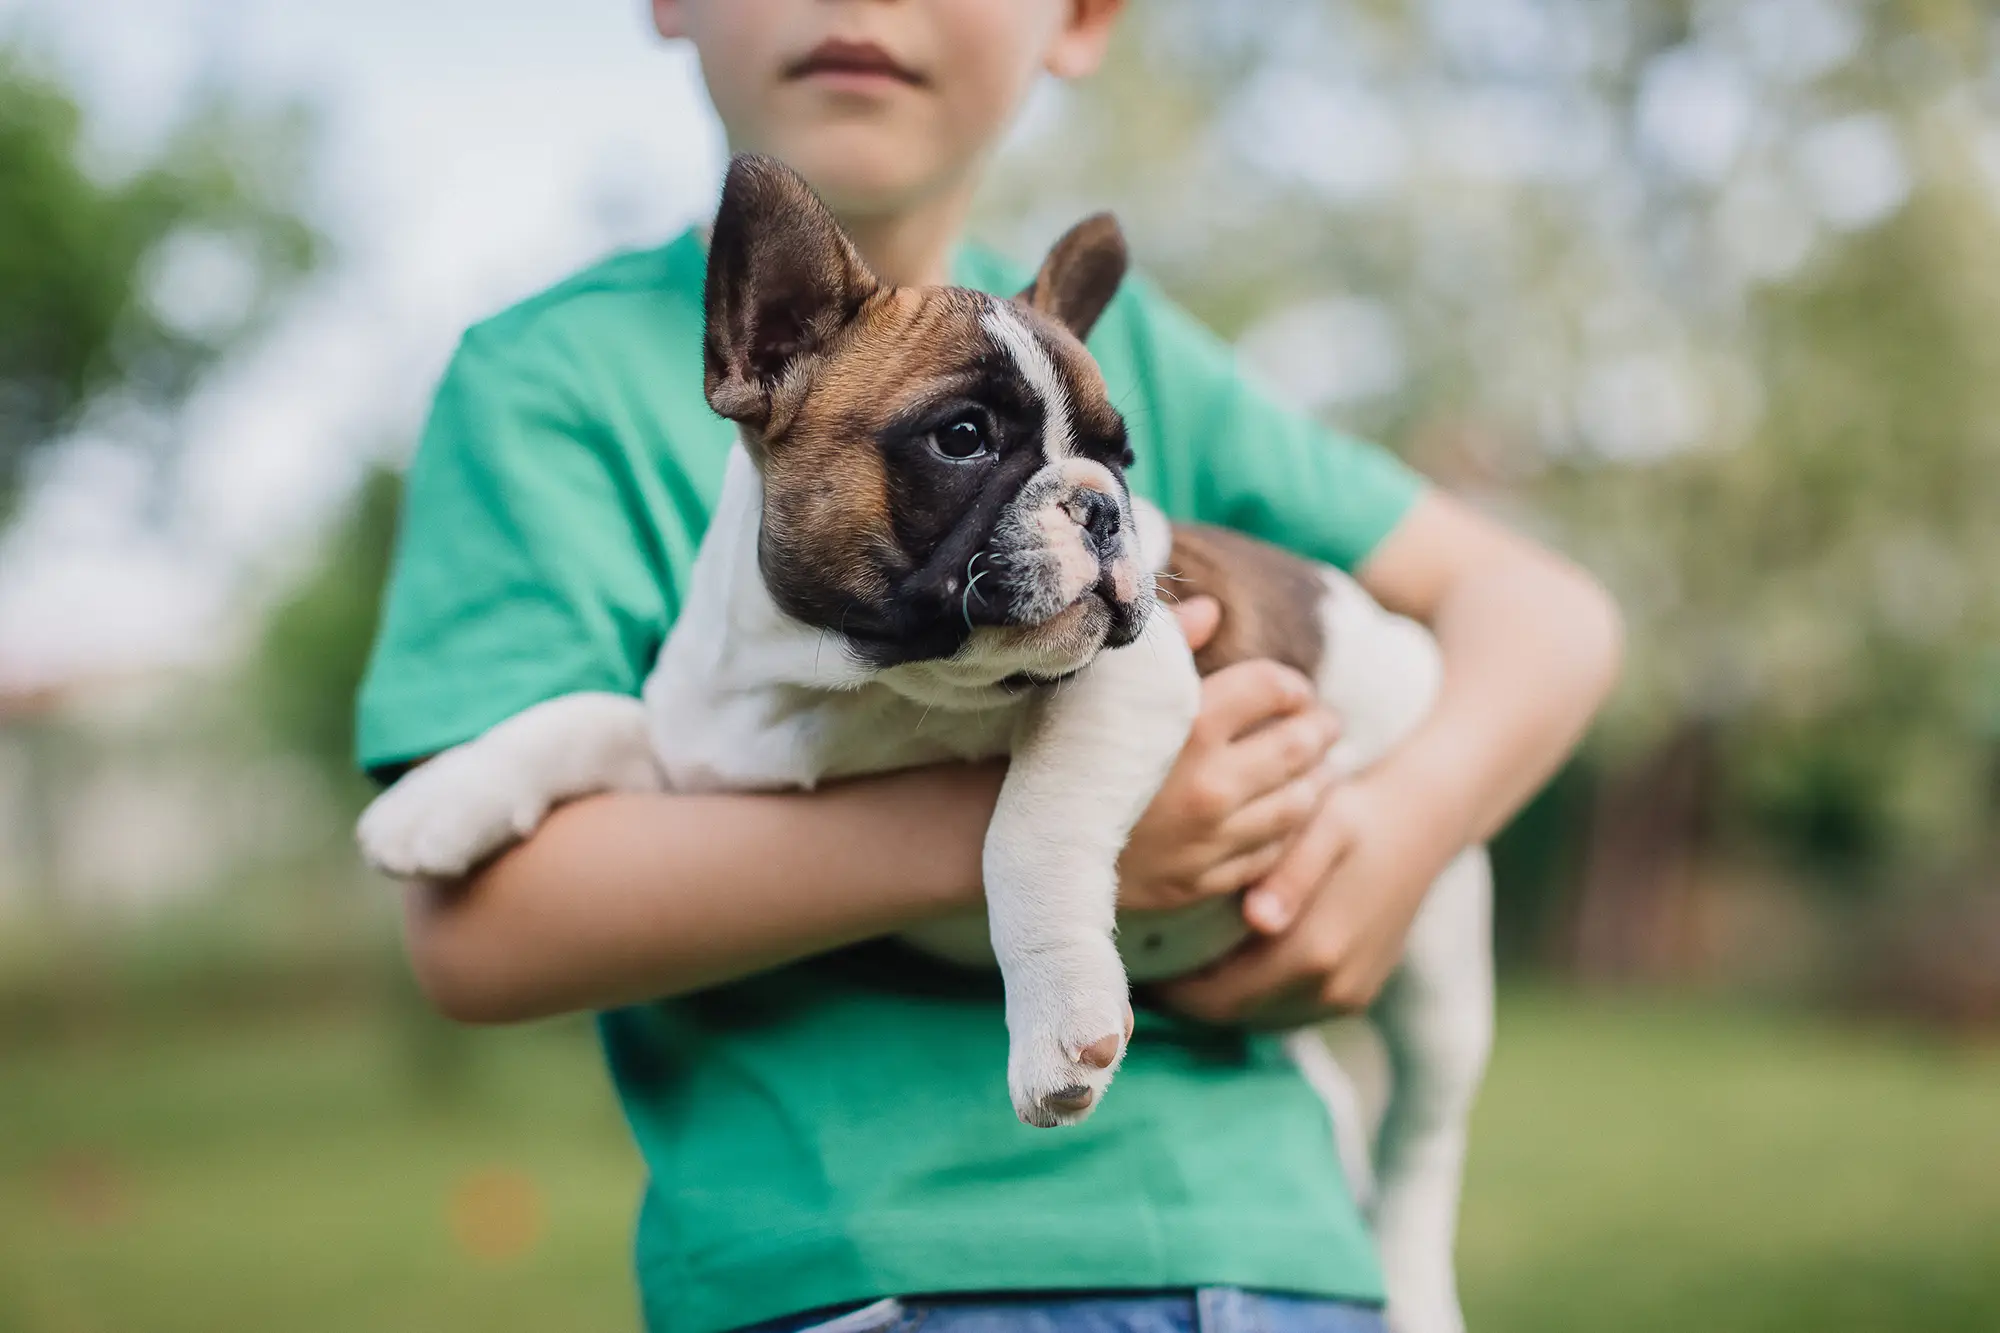 Boy holding a dog